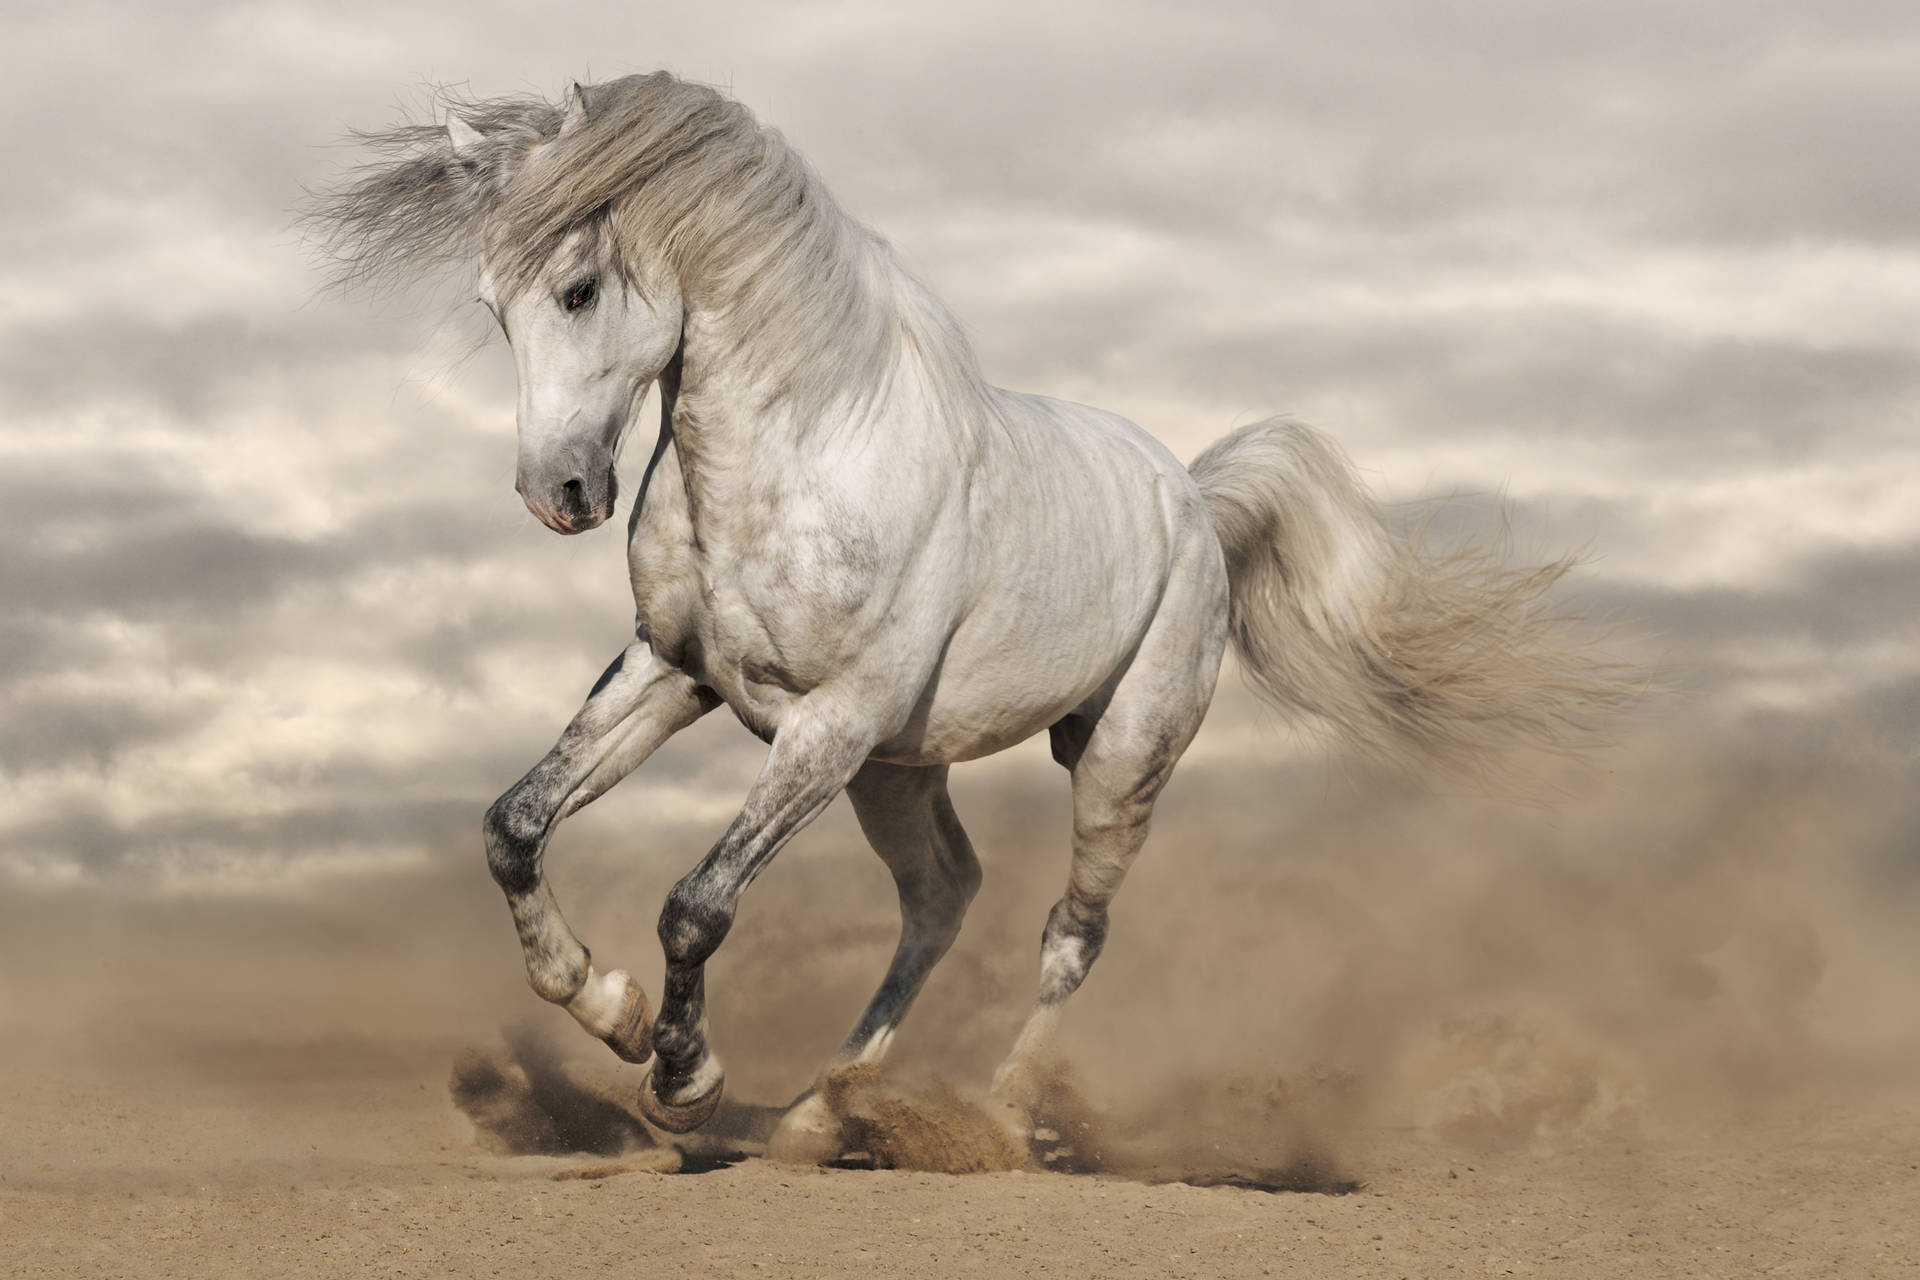 Cantering White Horse In Desert